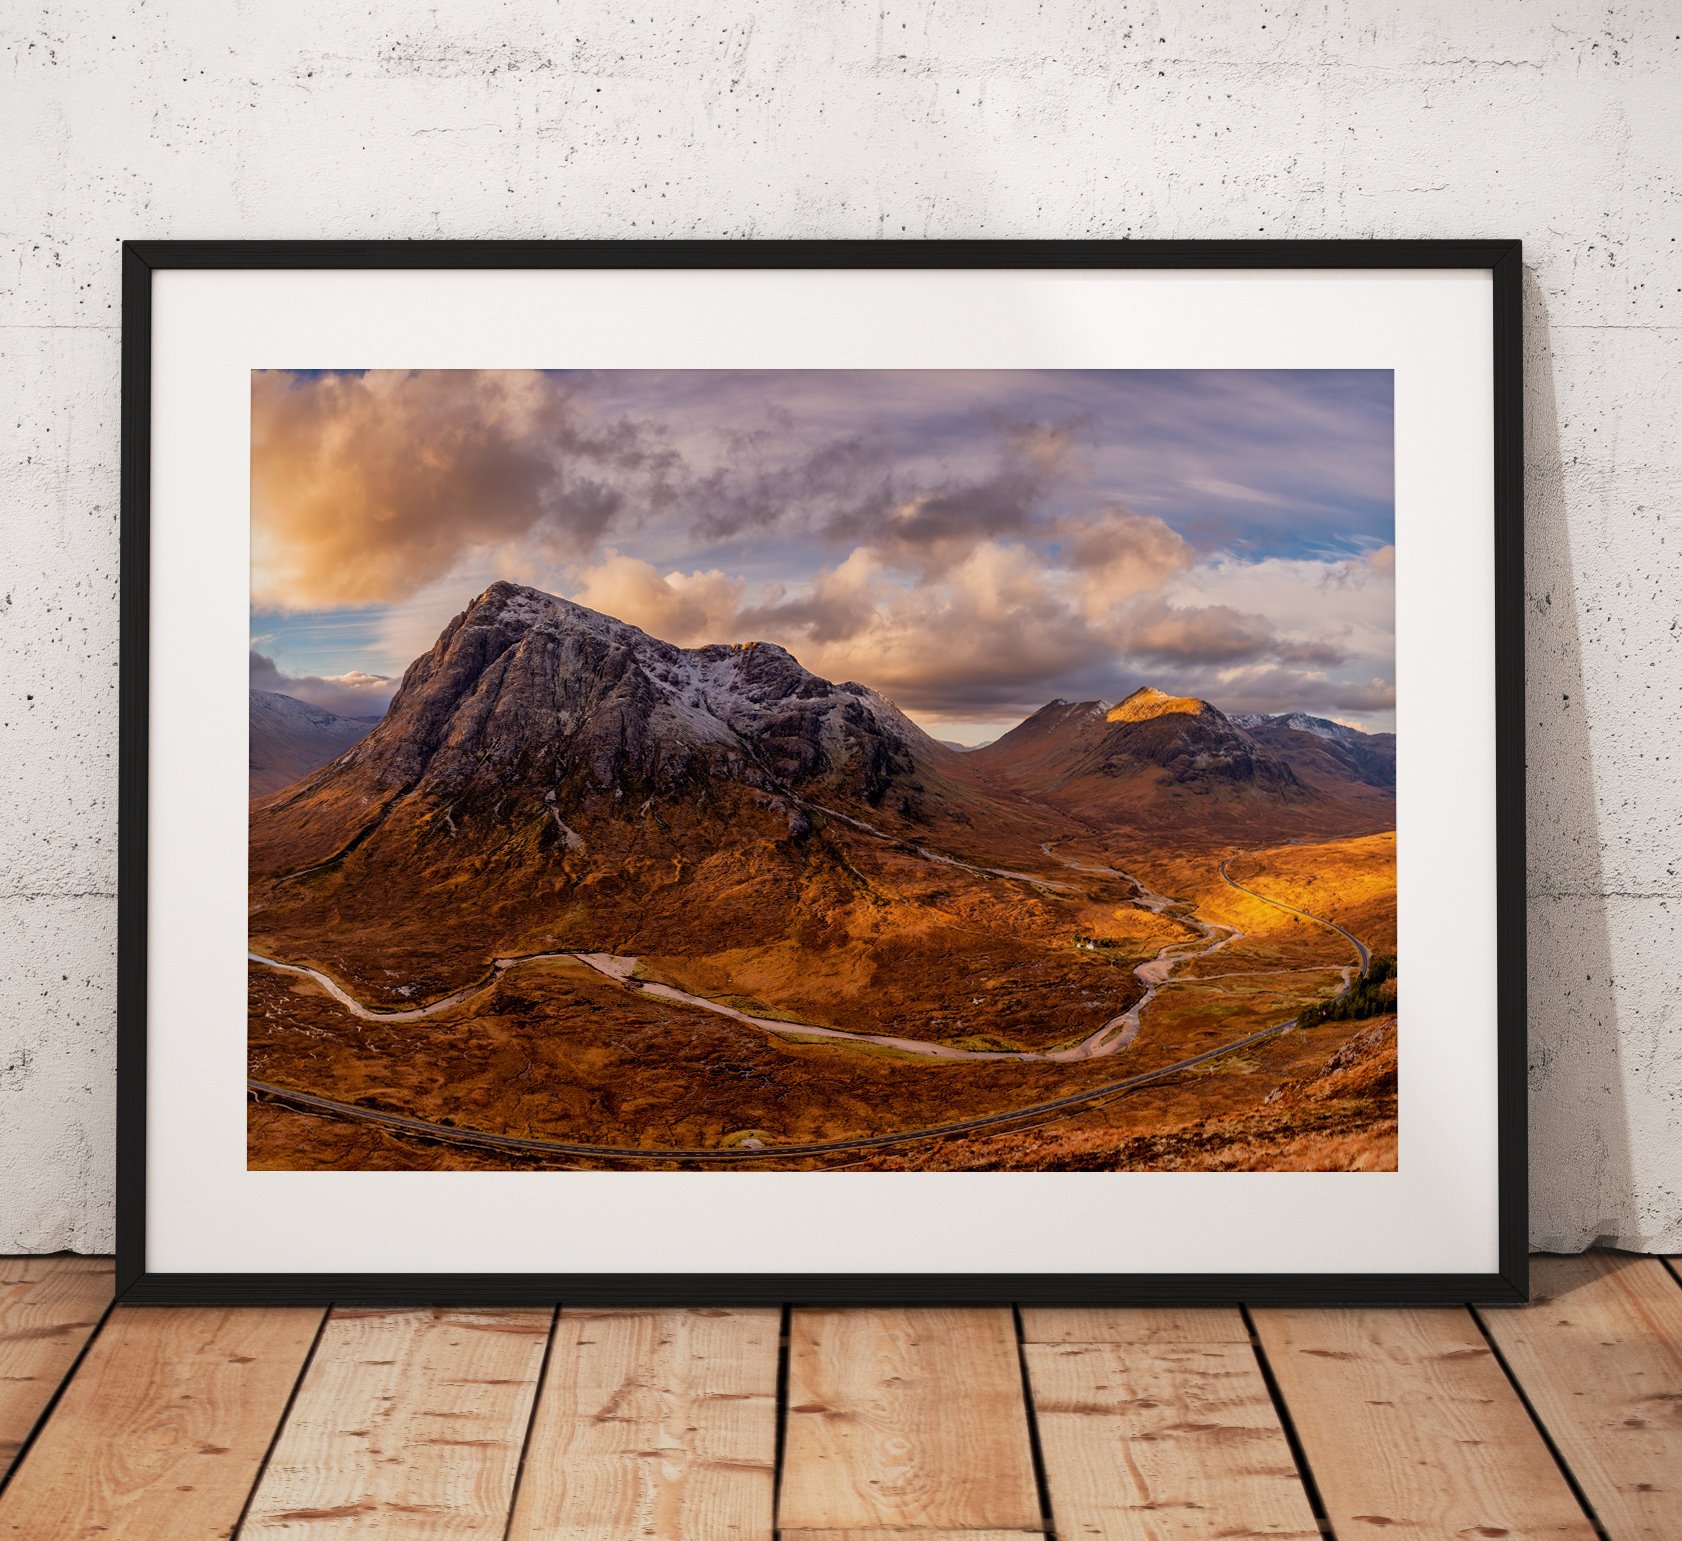 Northern Wild Landscape Photography - Glencoe Buachaille Etve Mor pano scottish highlands, Scotland UK